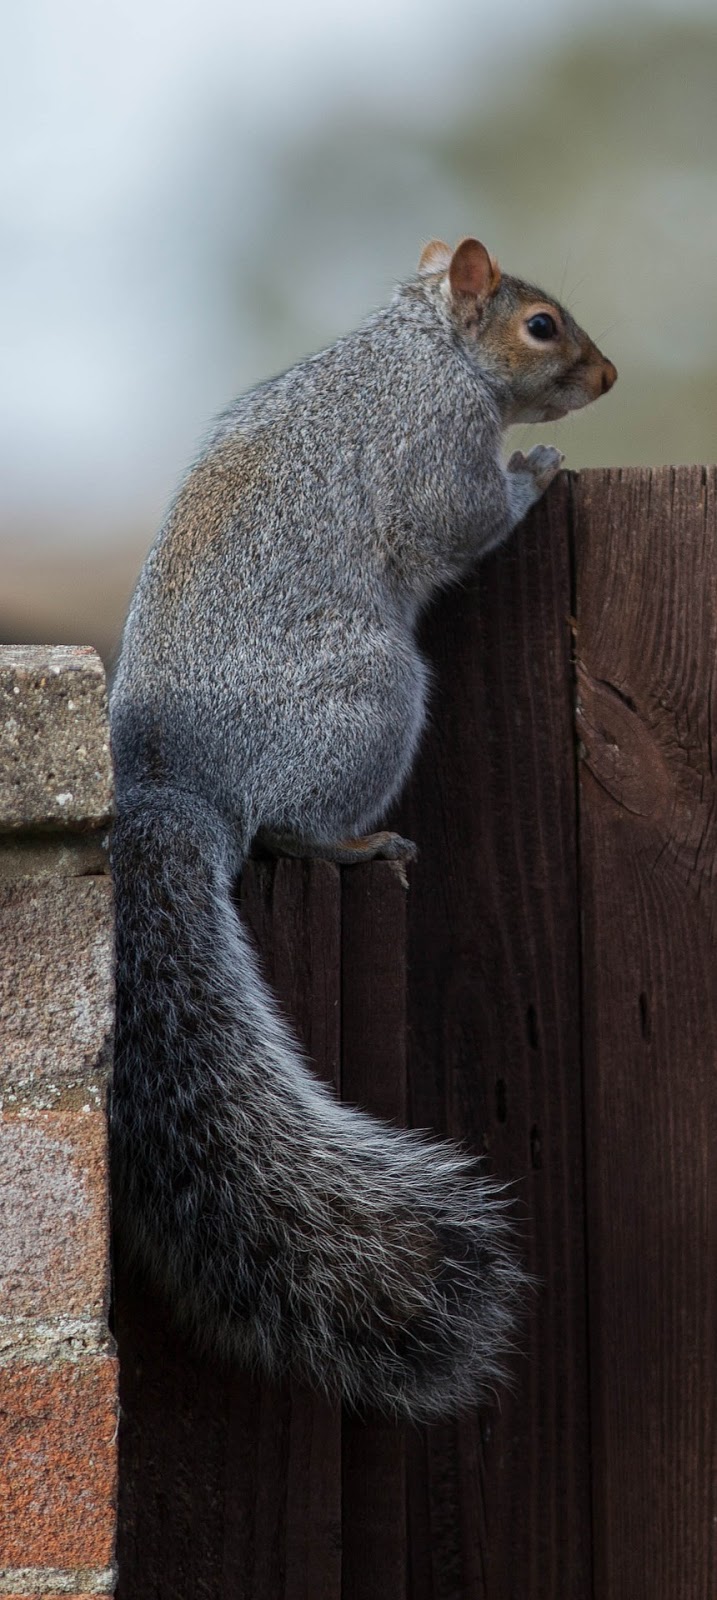 A squirrel climbing over a garden gate.